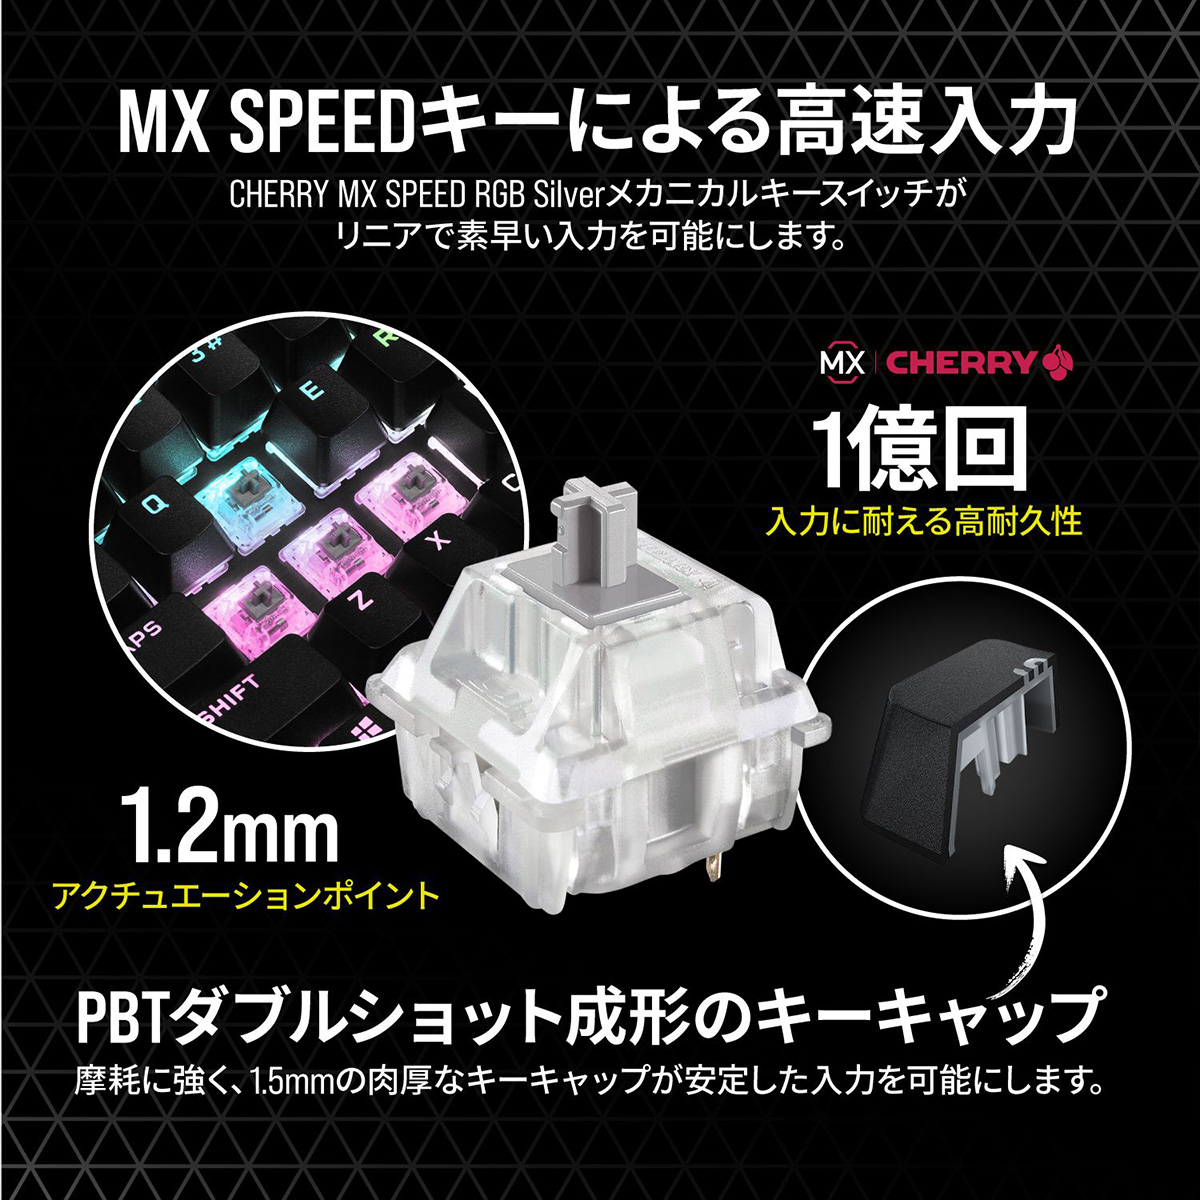 ［在庫限り］キーボード　K65 RGB MINI CherryMX SPEED -日本レイアウト-